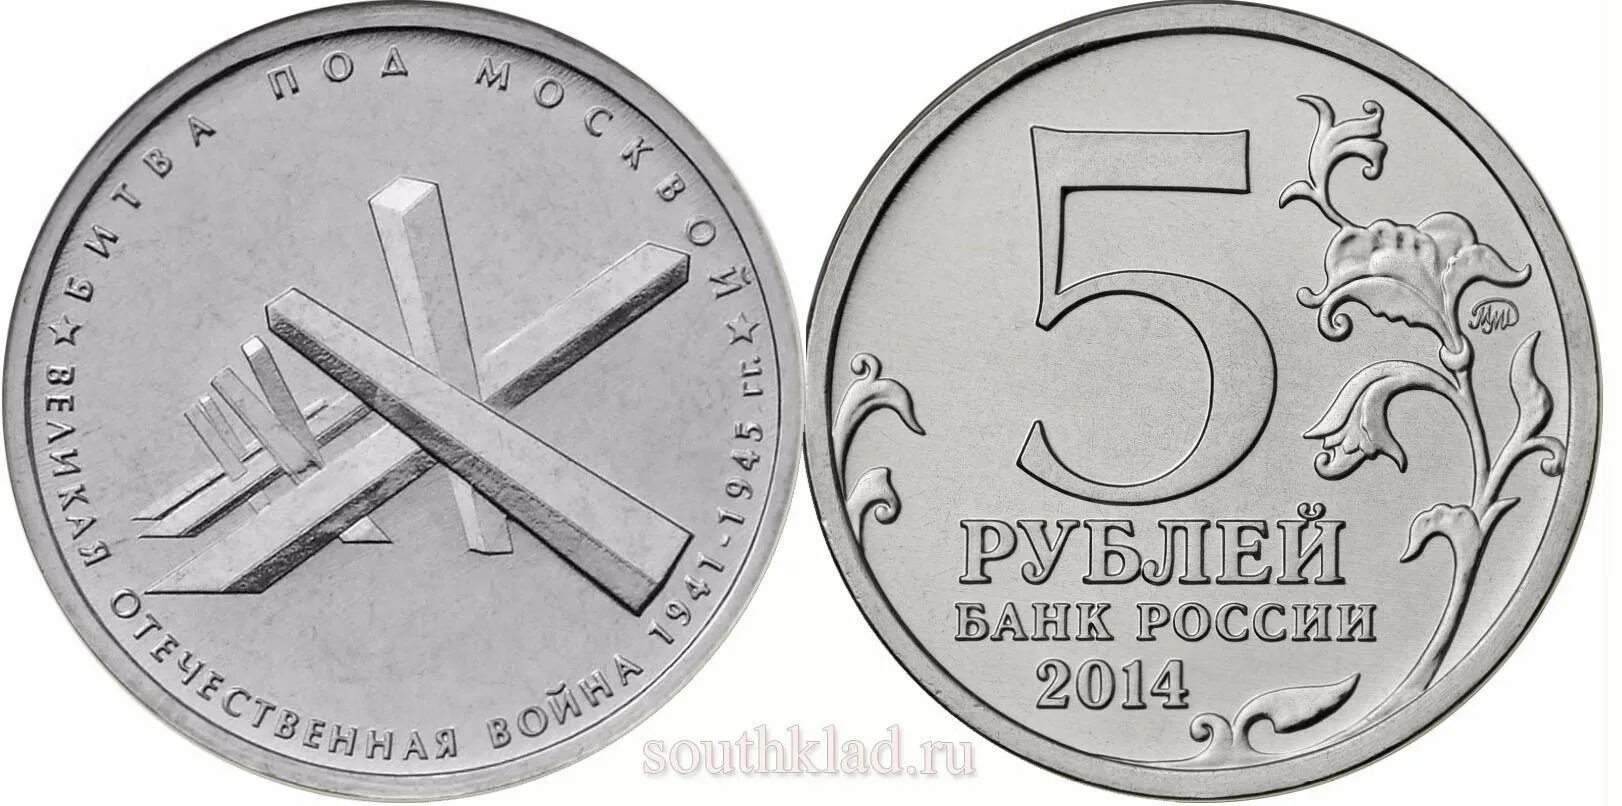 Монета битва под Москвой. 5 Рублей битва под Москвой. 5 Рублей 2014 Великая Отечественная. 5 рублей мешок